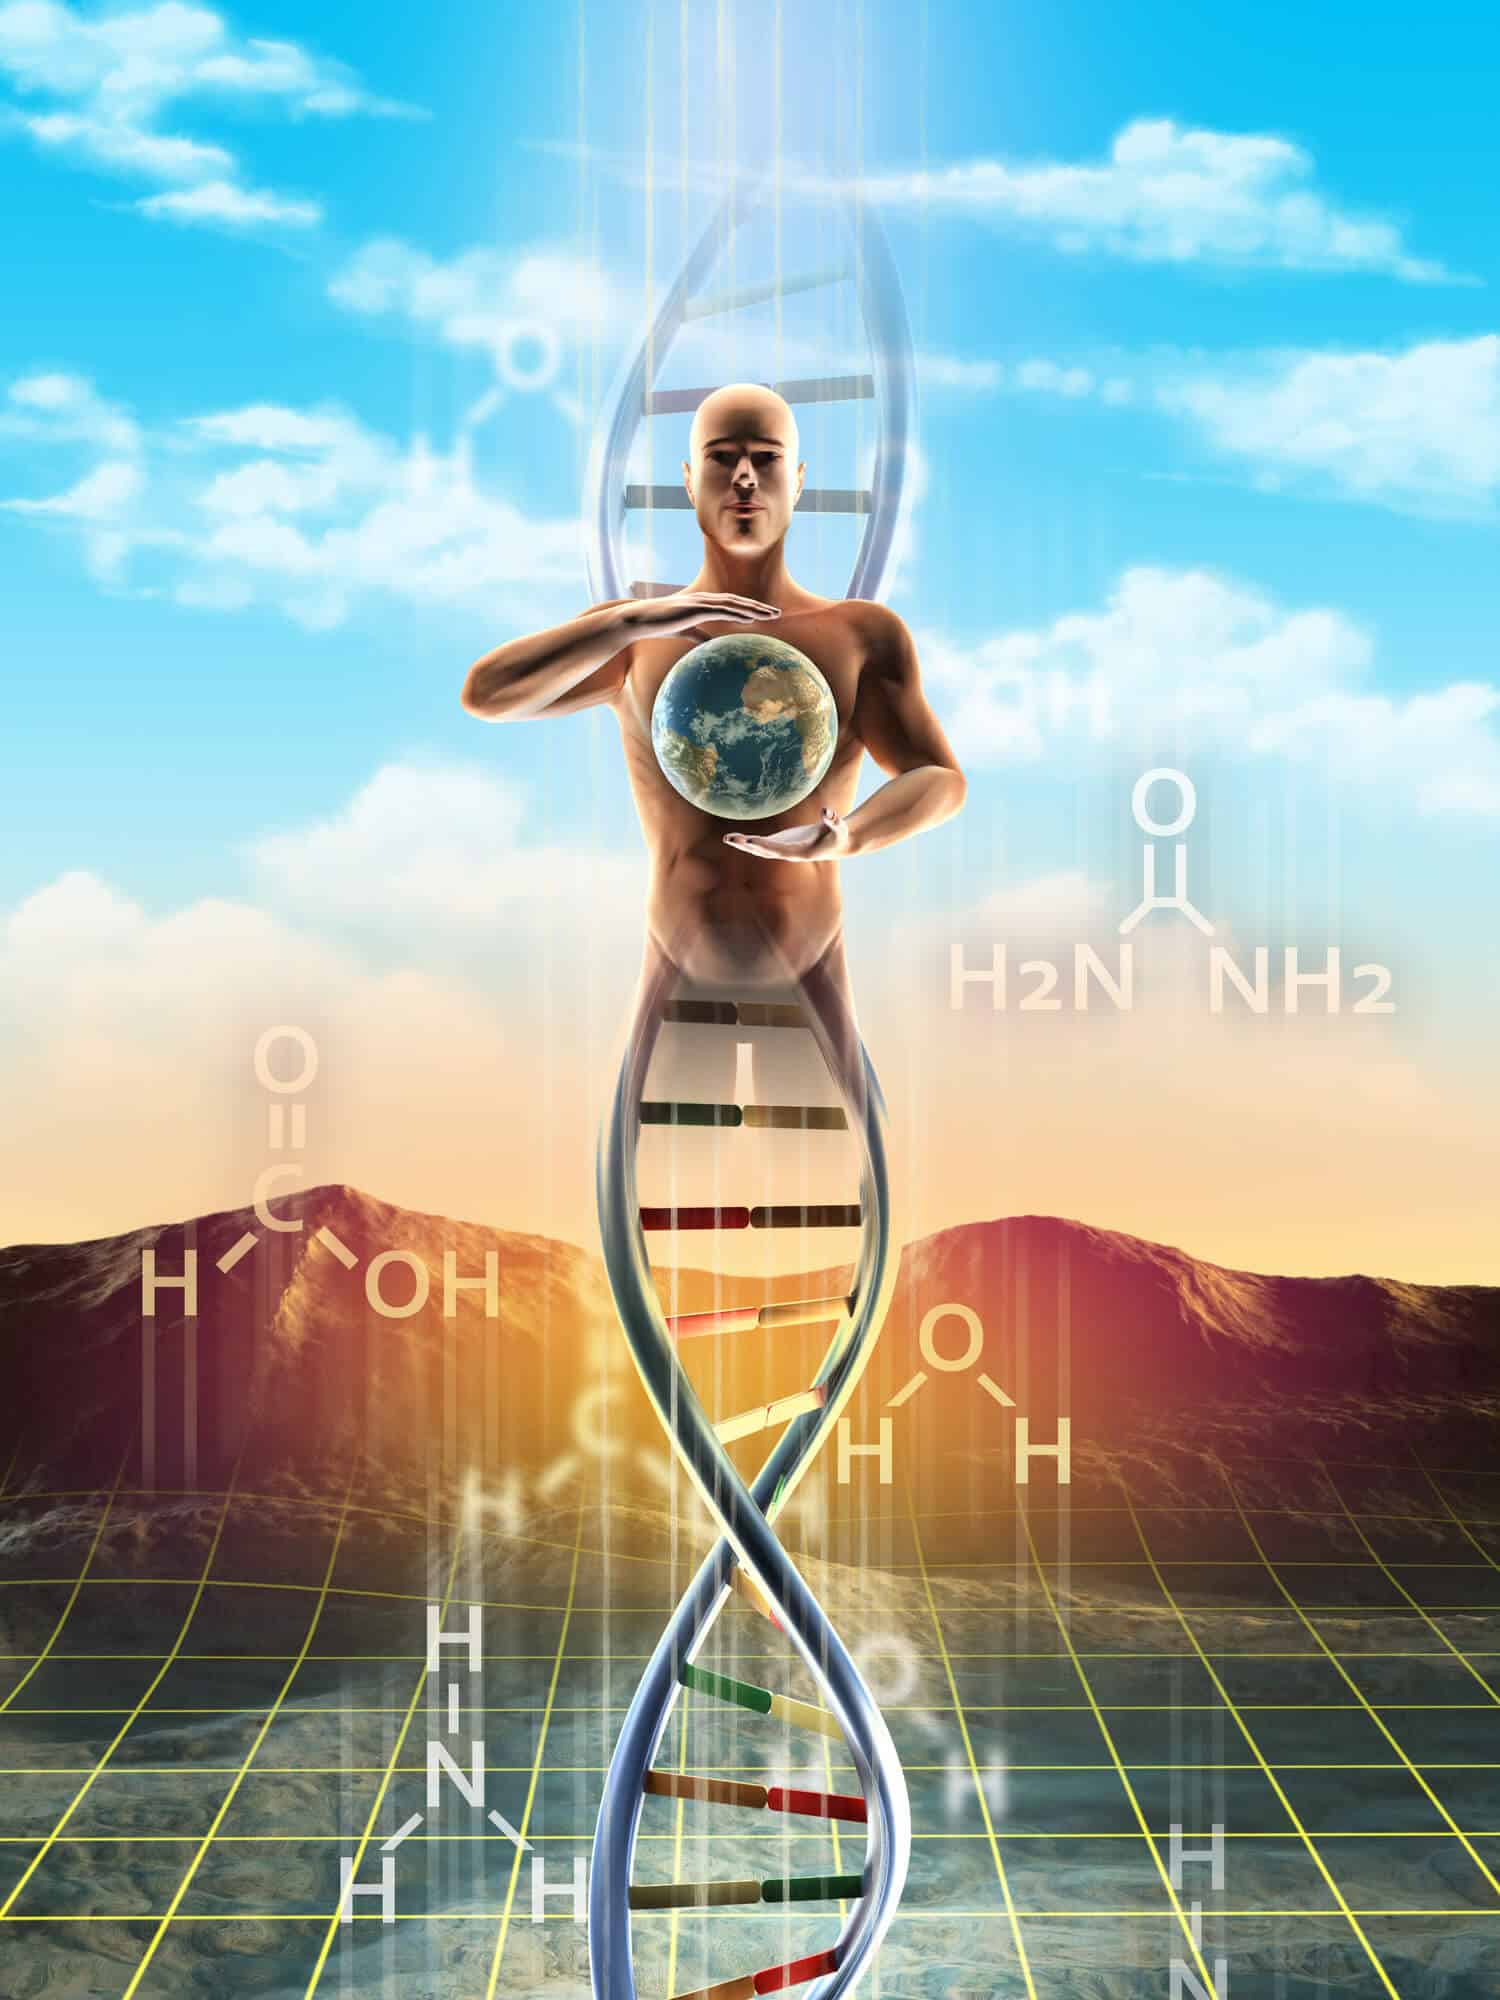 מוצא החיים ממולקולות פשוטות ועד ל-DNA. <a href="https://depositphotos.com. ">המחשה: depositphotos.com</a>